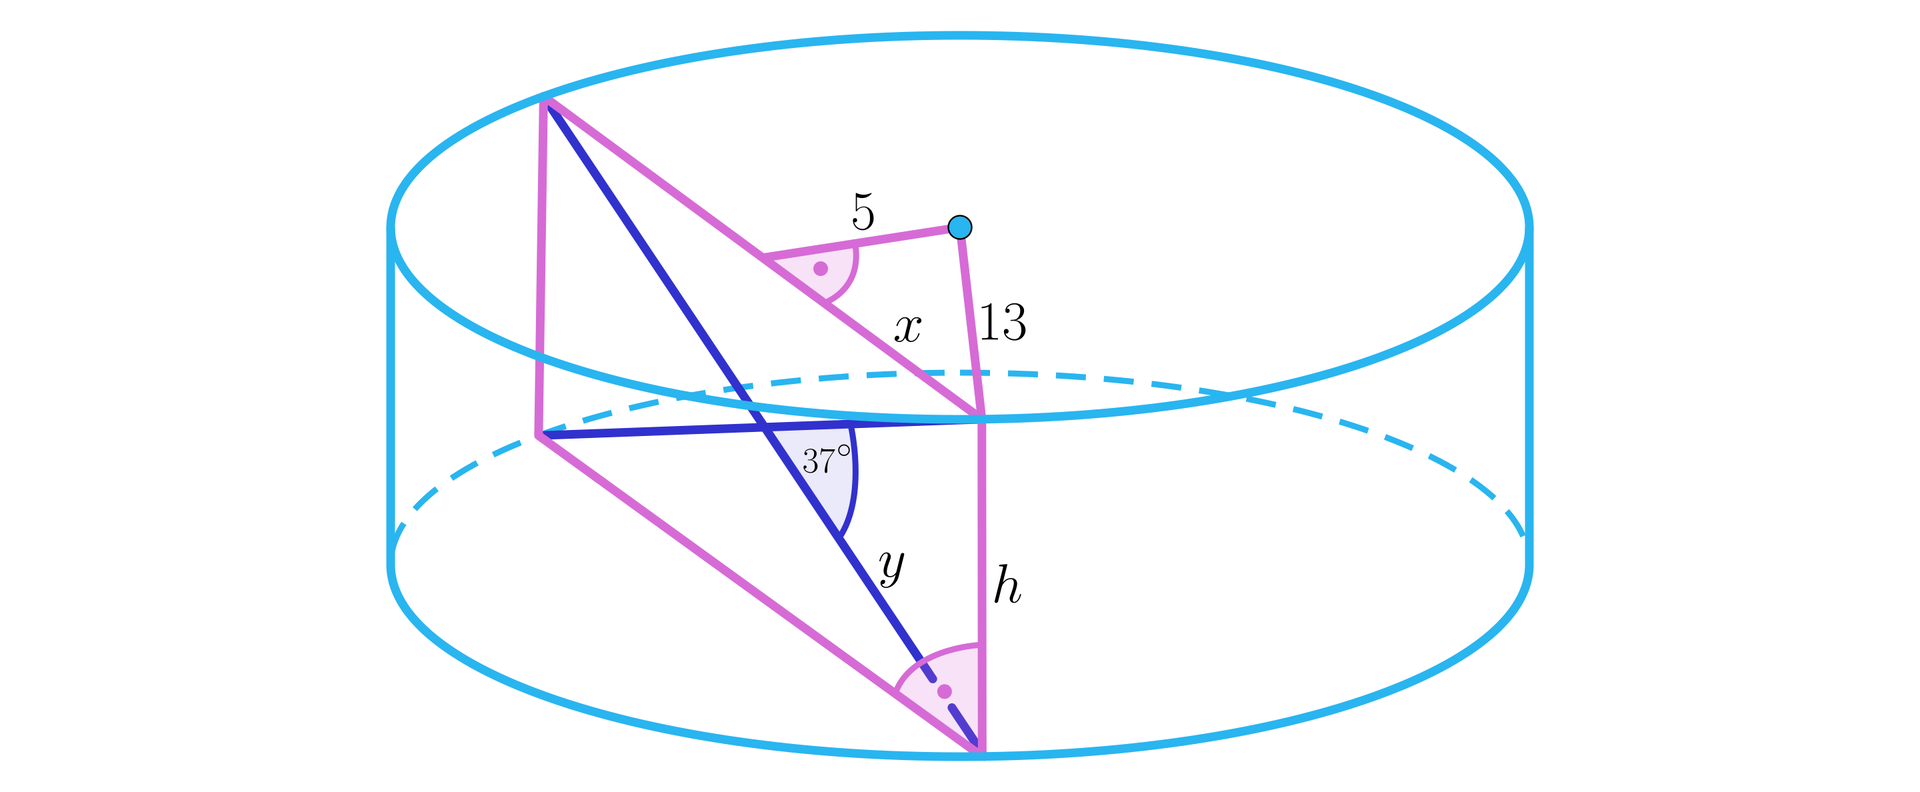 Ilustracja przedstawia walec oraz prostokąt znajdujący się wewnątrz bryły będącym jego przekrojem. W prostokącie o wymiarach h na dwa x, zaznaczono dwie przekątne przecinające się w środku prostokąta. Przecięcia te utworzyły trójkąt równoramienny o podstawie h oraz długości ramion y. Kąt pomiędzy ramionami tego trójkąta wynosi trzydzieści siedem stopni.  Ze środka górnej podstawy walca poprowadzony dwa odcinki, pierwszy prostopadły odcinek o długości pięć, dzielący dłuższy bok przekroju zawartego w górnej podstawie na pół.  Drugim odcinkiem jest promień podstawy walca o długości trzynaście, łączący środek okręgu z końcem dłużej ściany bocznej prostokąta zawartej w górnej podstawie bryły. Powstał prostokątny zawarty w podstawie walca, o długości przyprostokątnych pięć oraz x, oraz przeciwprostokątnej o długości trzynaście . 